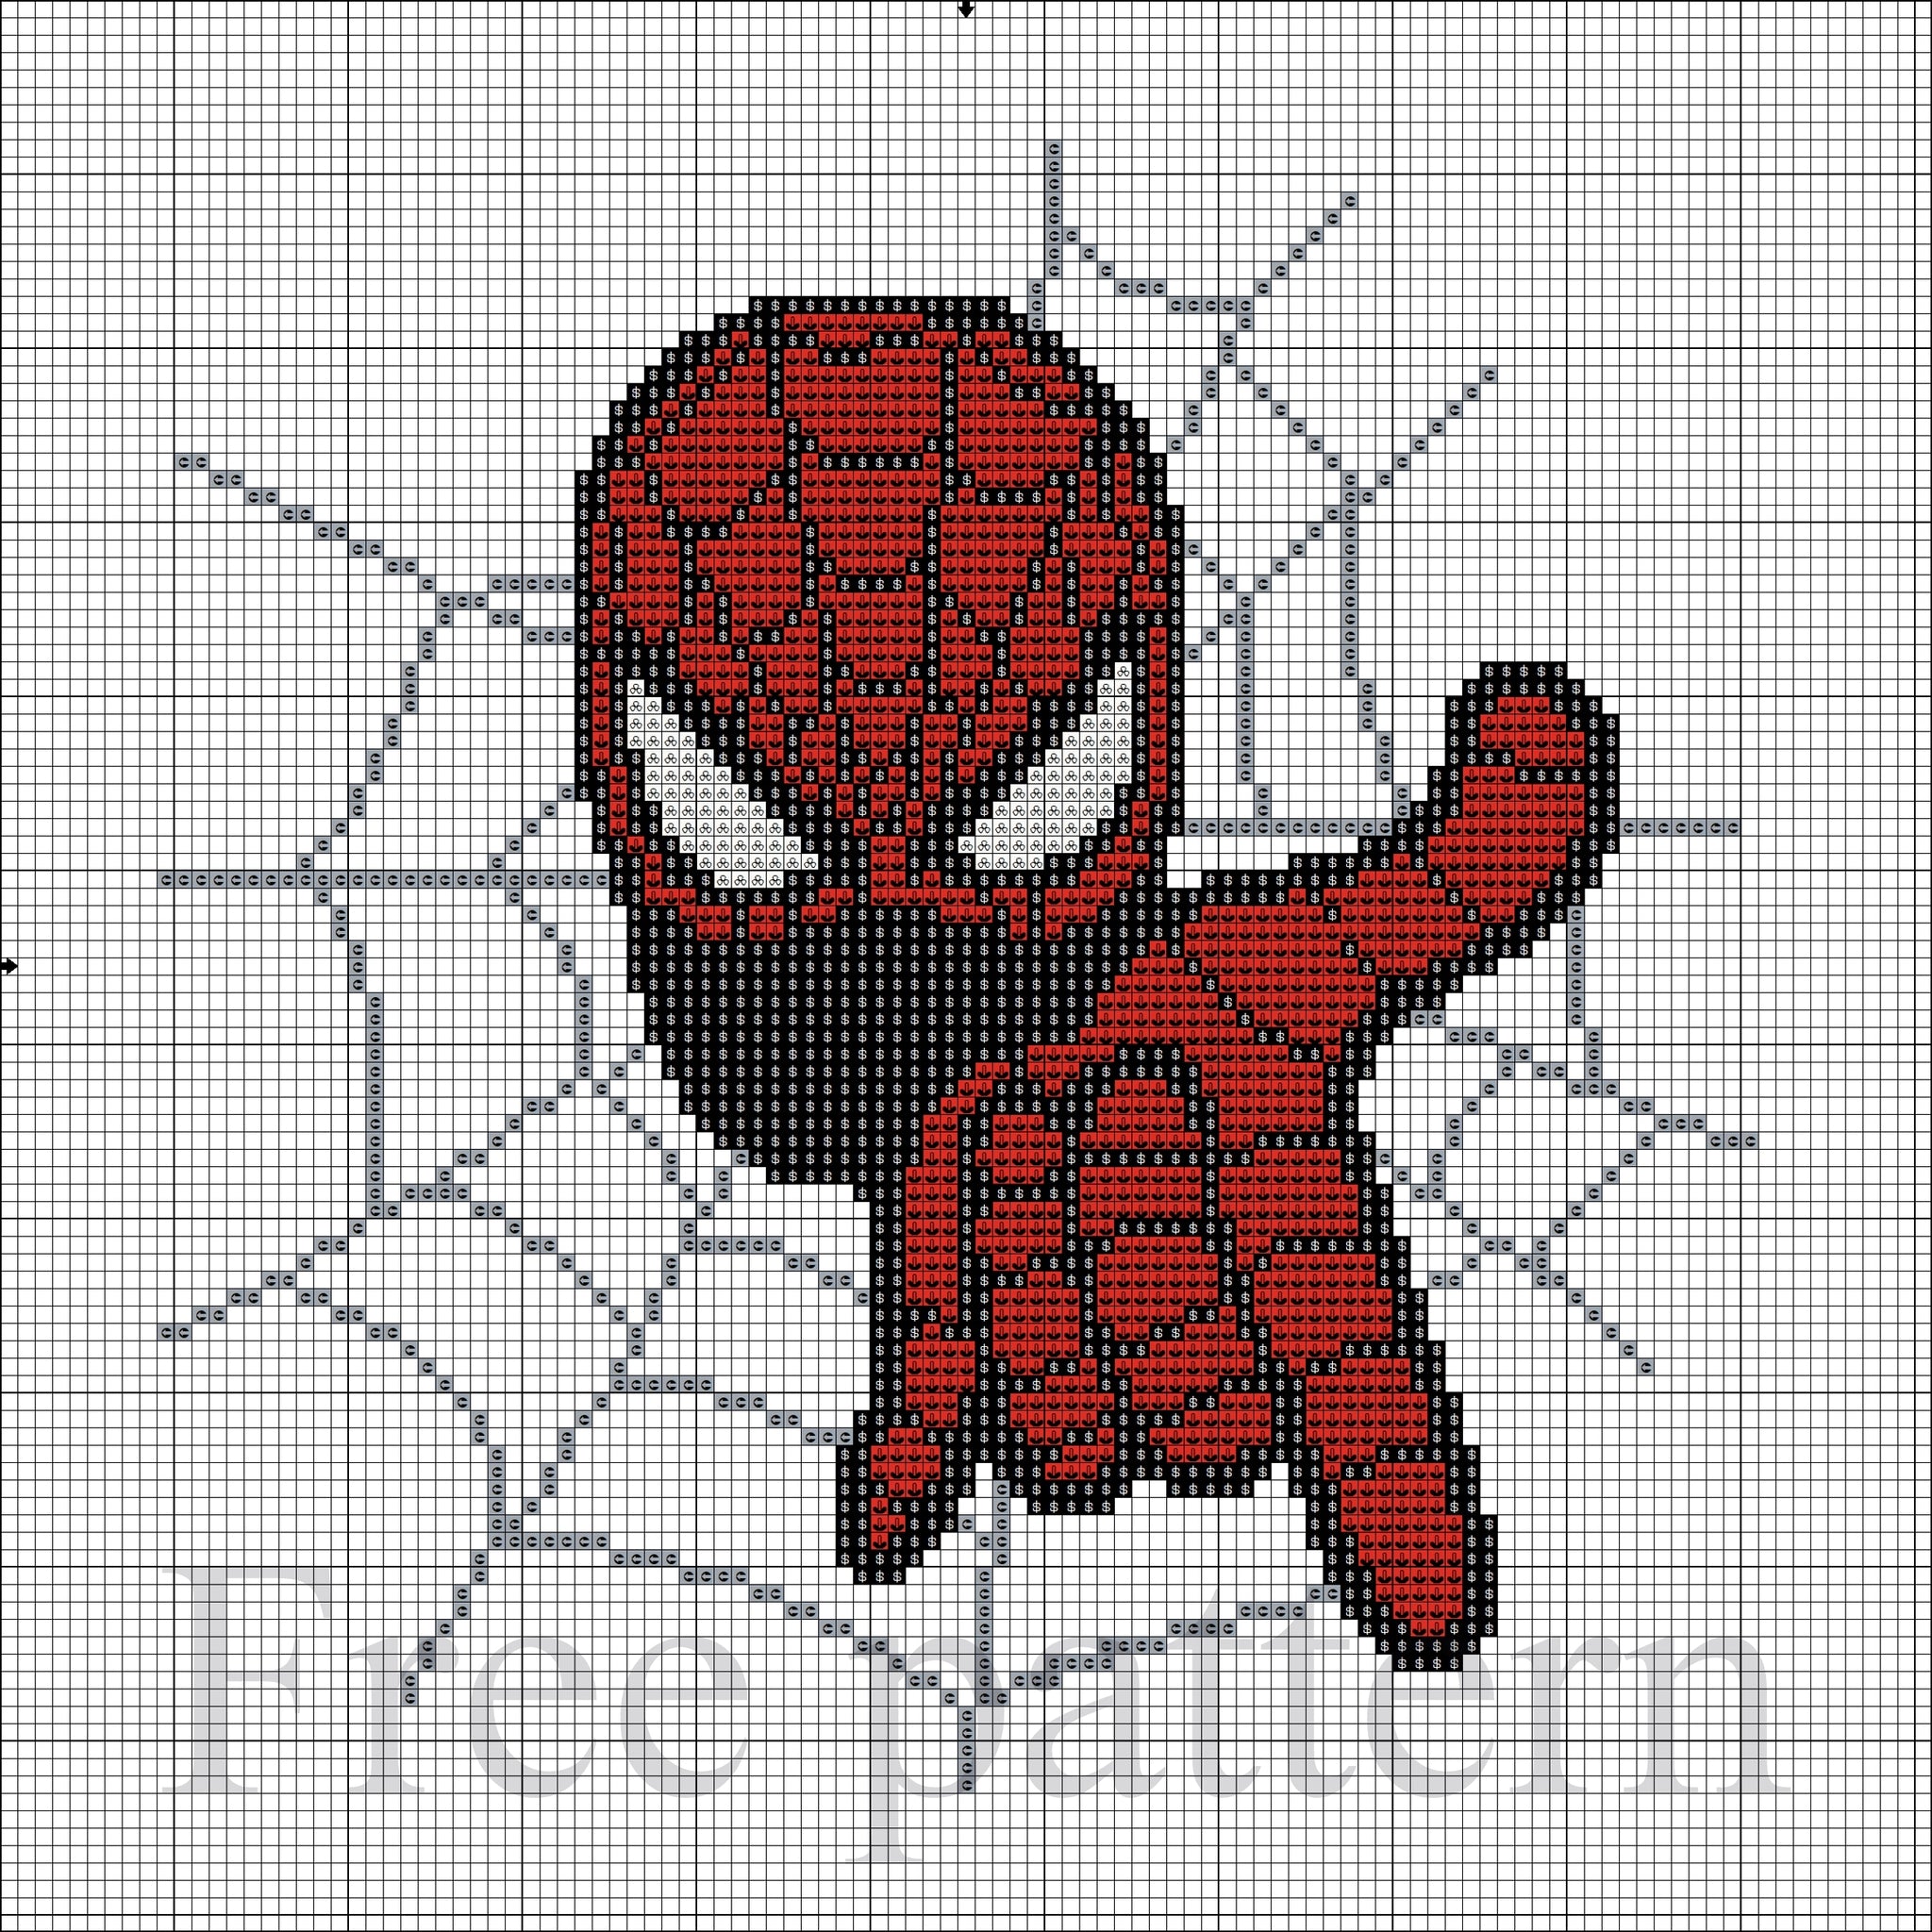 Spider cross stitch pattern